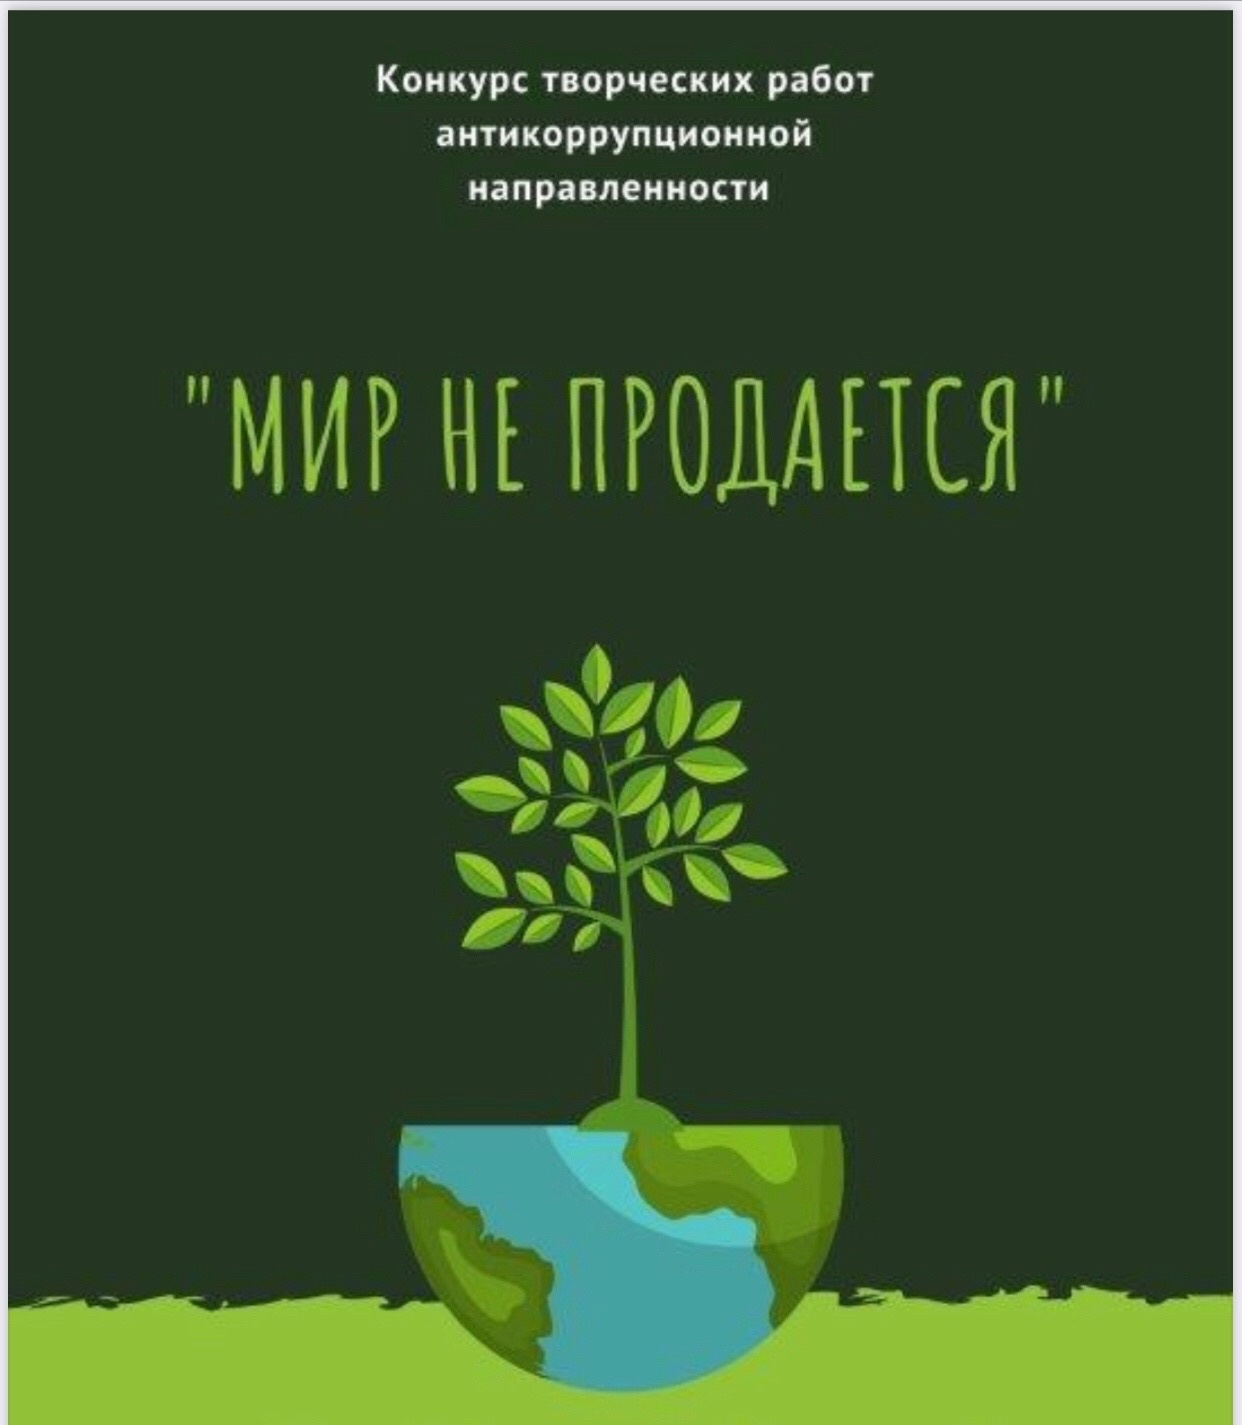 На Вологодчине стартовал областной антикоррупционный конкурс «Мир не продается».